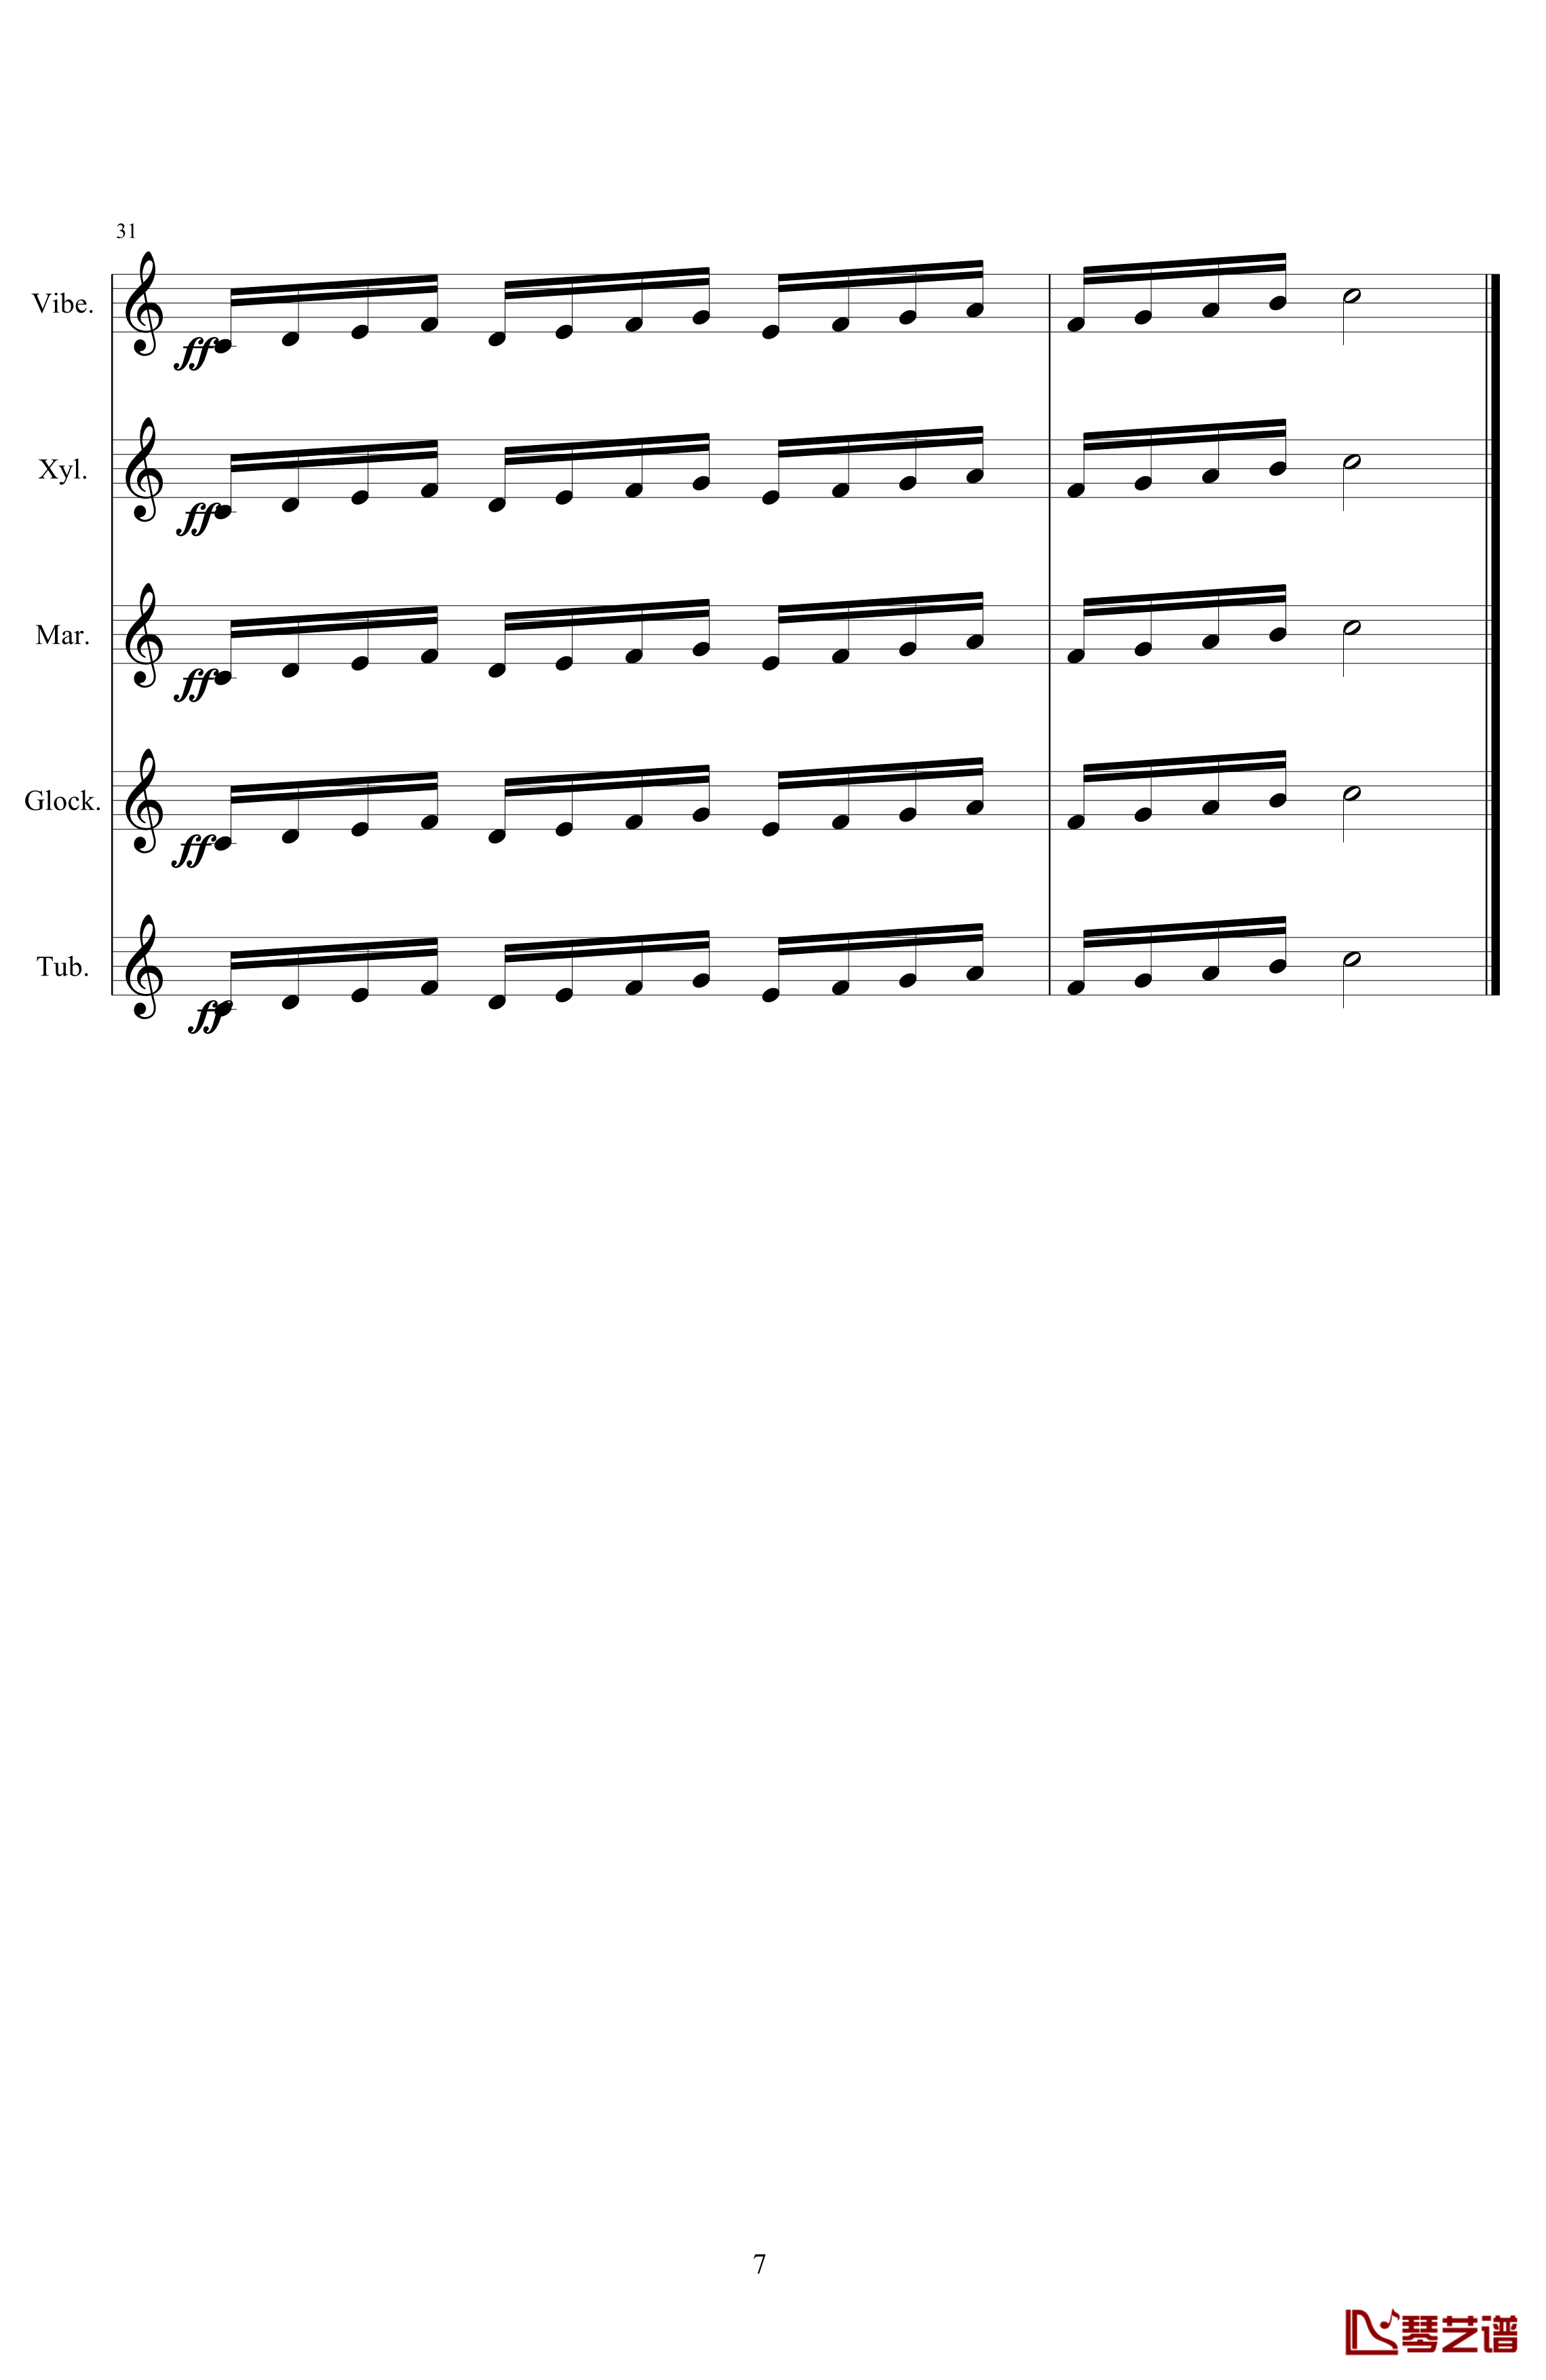 钟声钢琴谱-打击乐爵士五重奏-练习曲-105725787